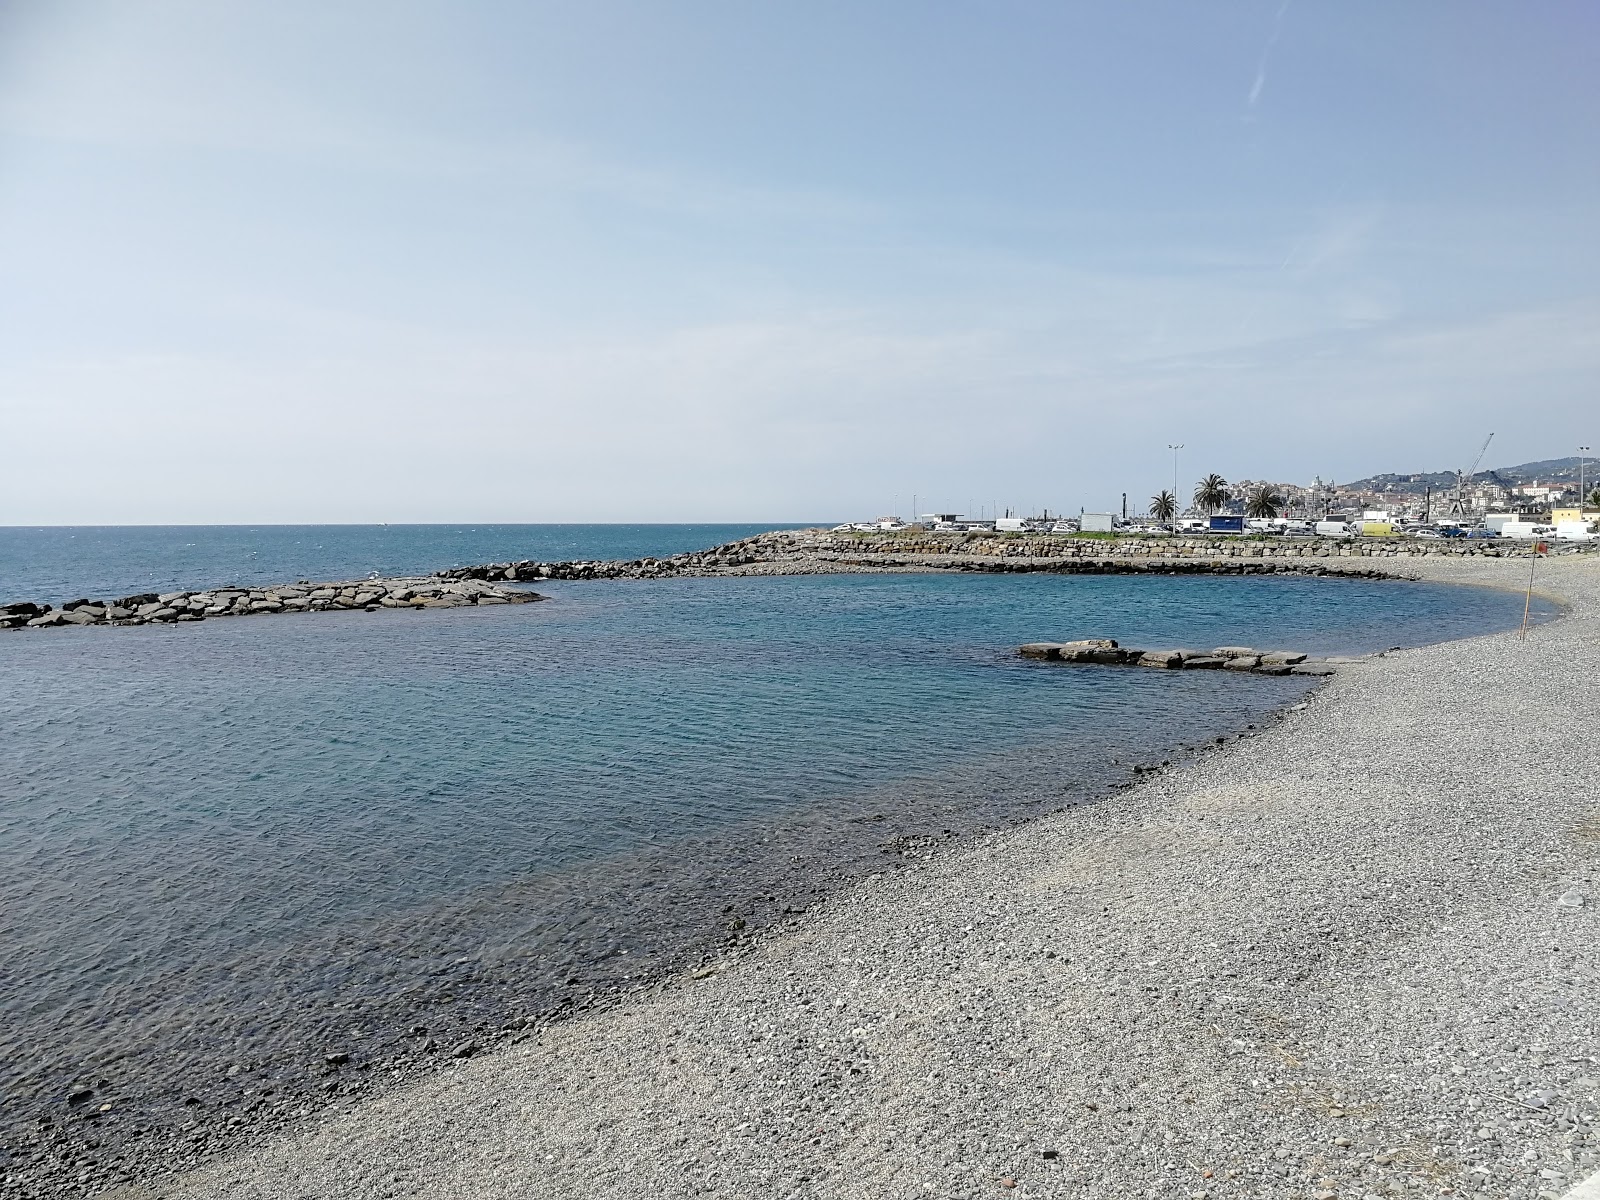 Spiaggia Sogni d'estate'in fotoğrafı gri ince çakıl taş yüzey ile